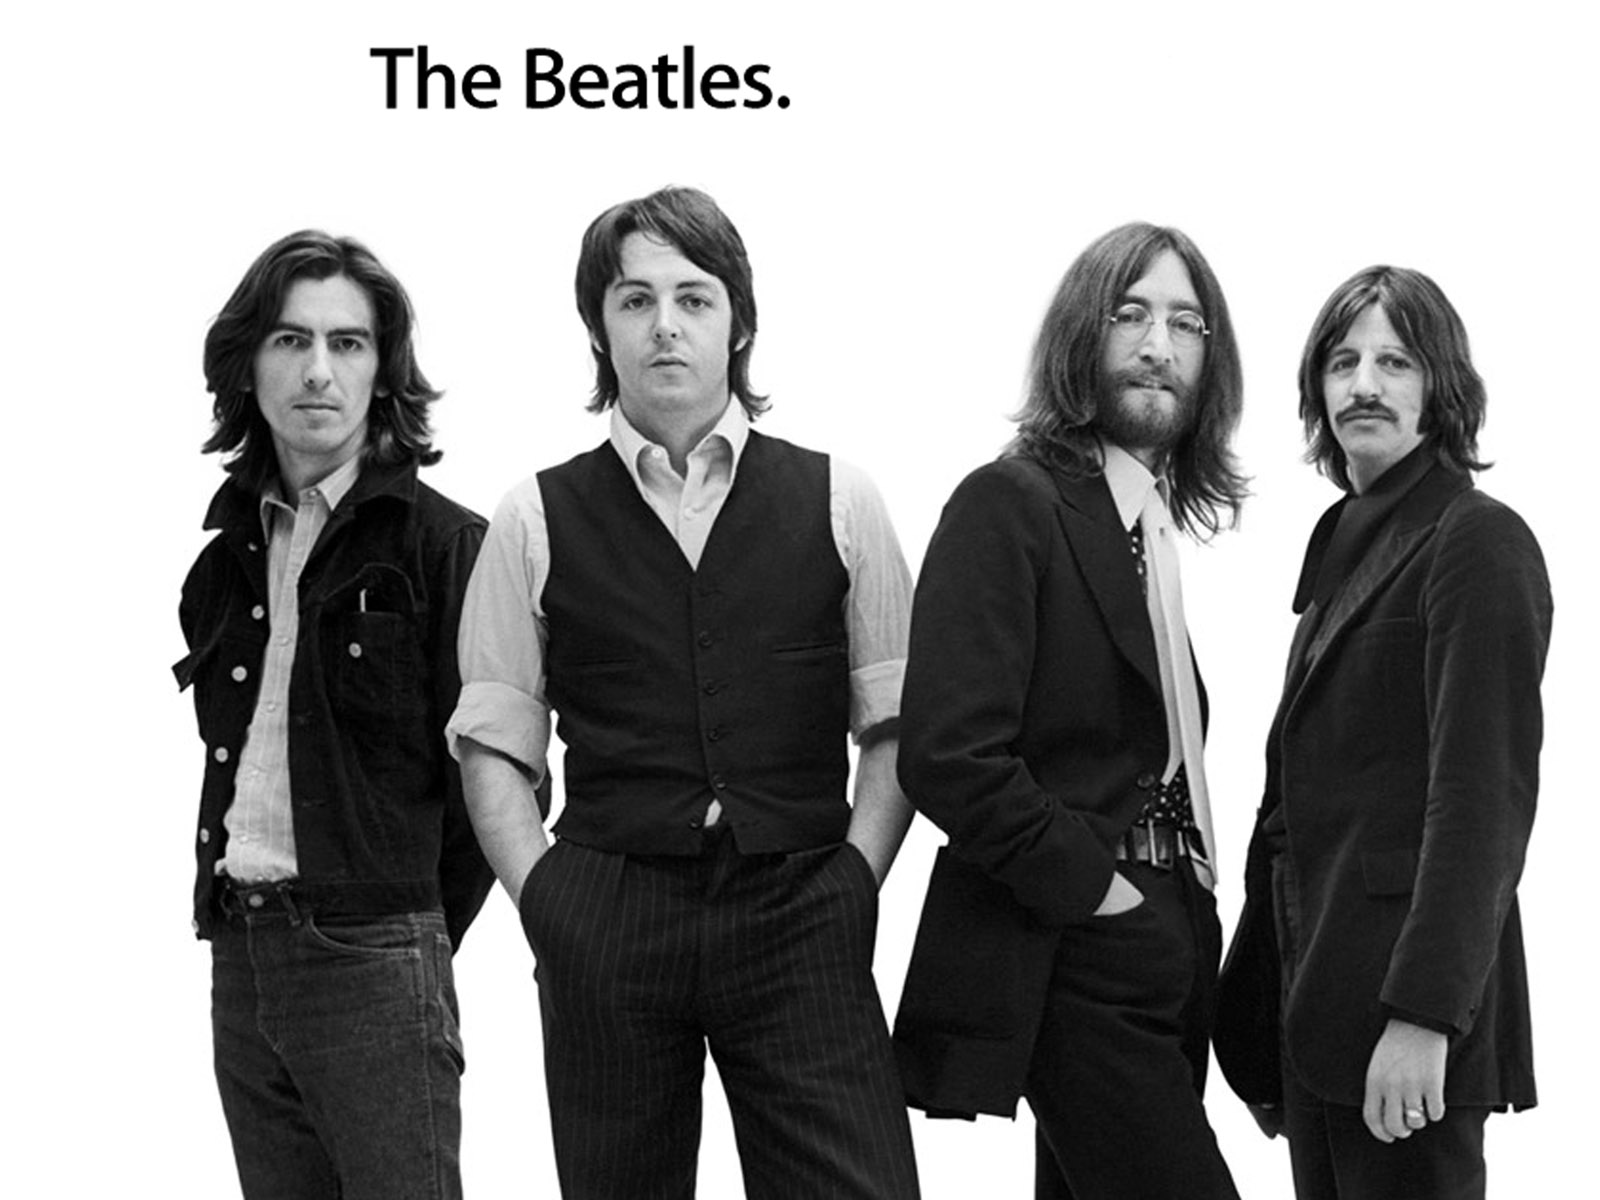  The Beatles  HD  Wallpaper  WallpaperSafari